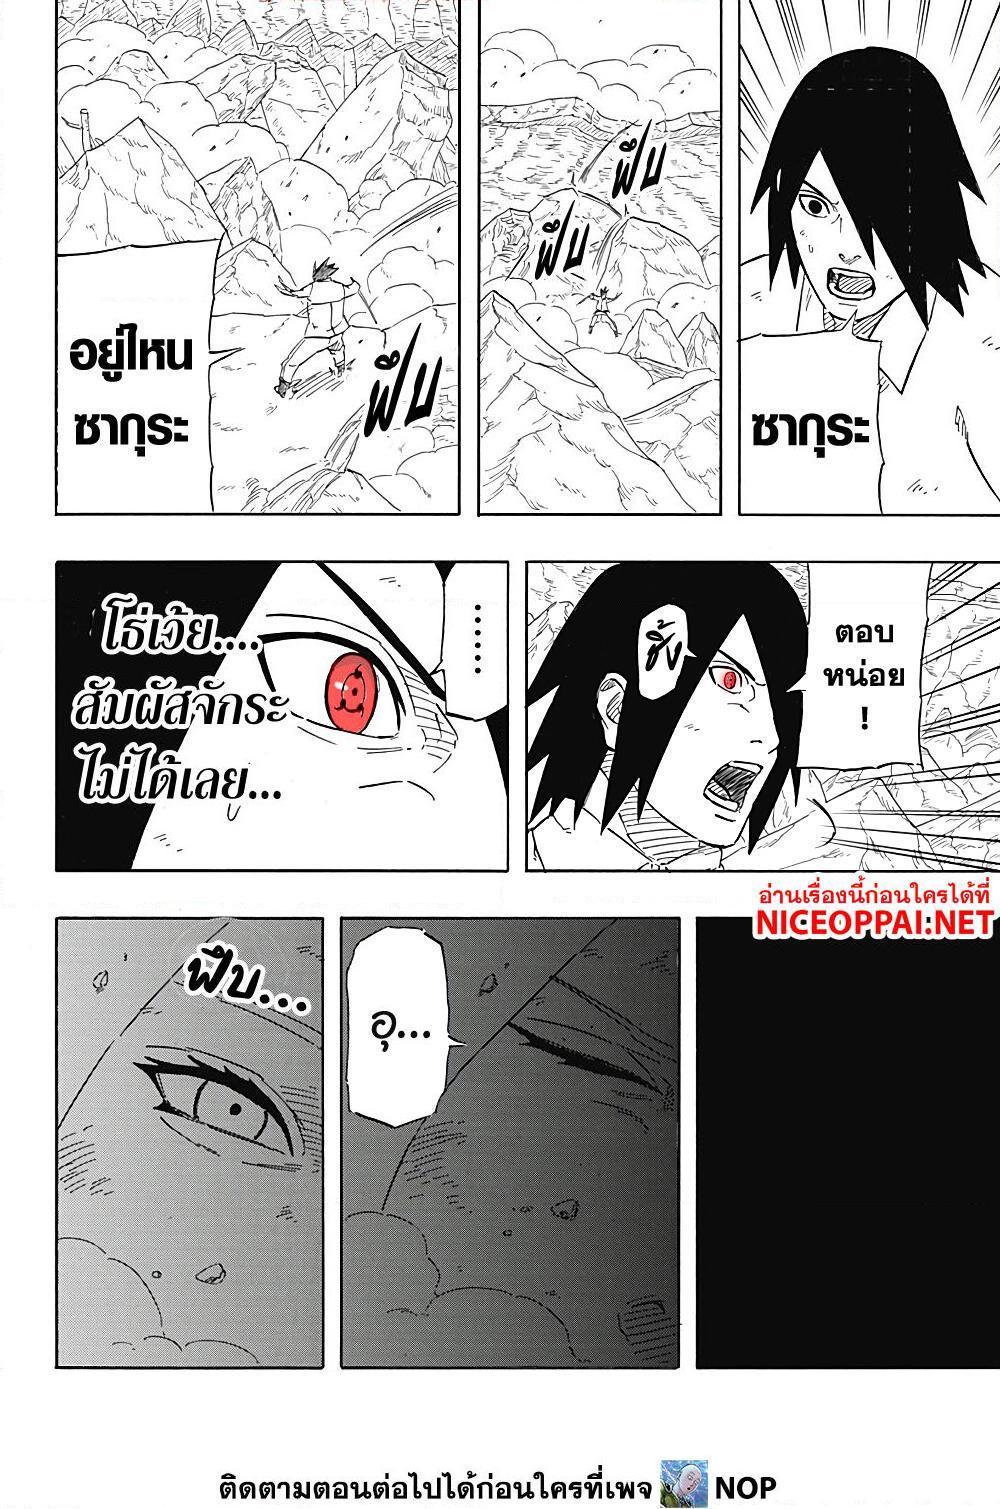 Naruto Sasuke’s Story 8.1 08